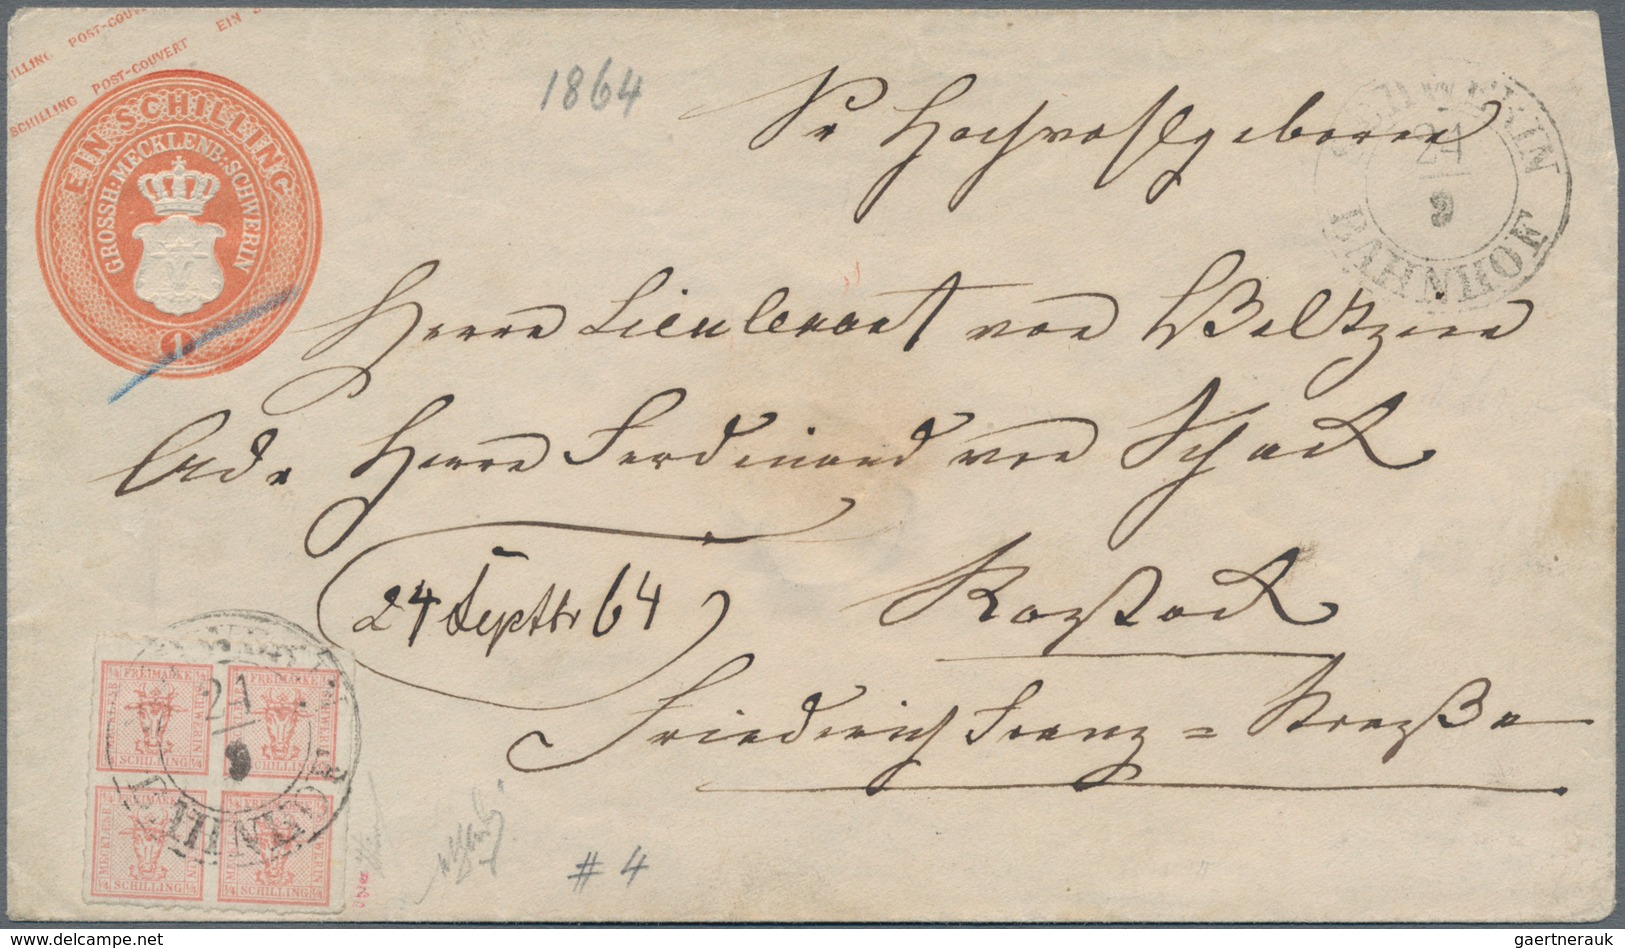 Mecklenburg-Schwerin - Marken Und Briefe: 1864, 1 S Orangerot Ganzsachenumschlag Mit Zusatzfrankatur - Mecklenburg-Schwerin